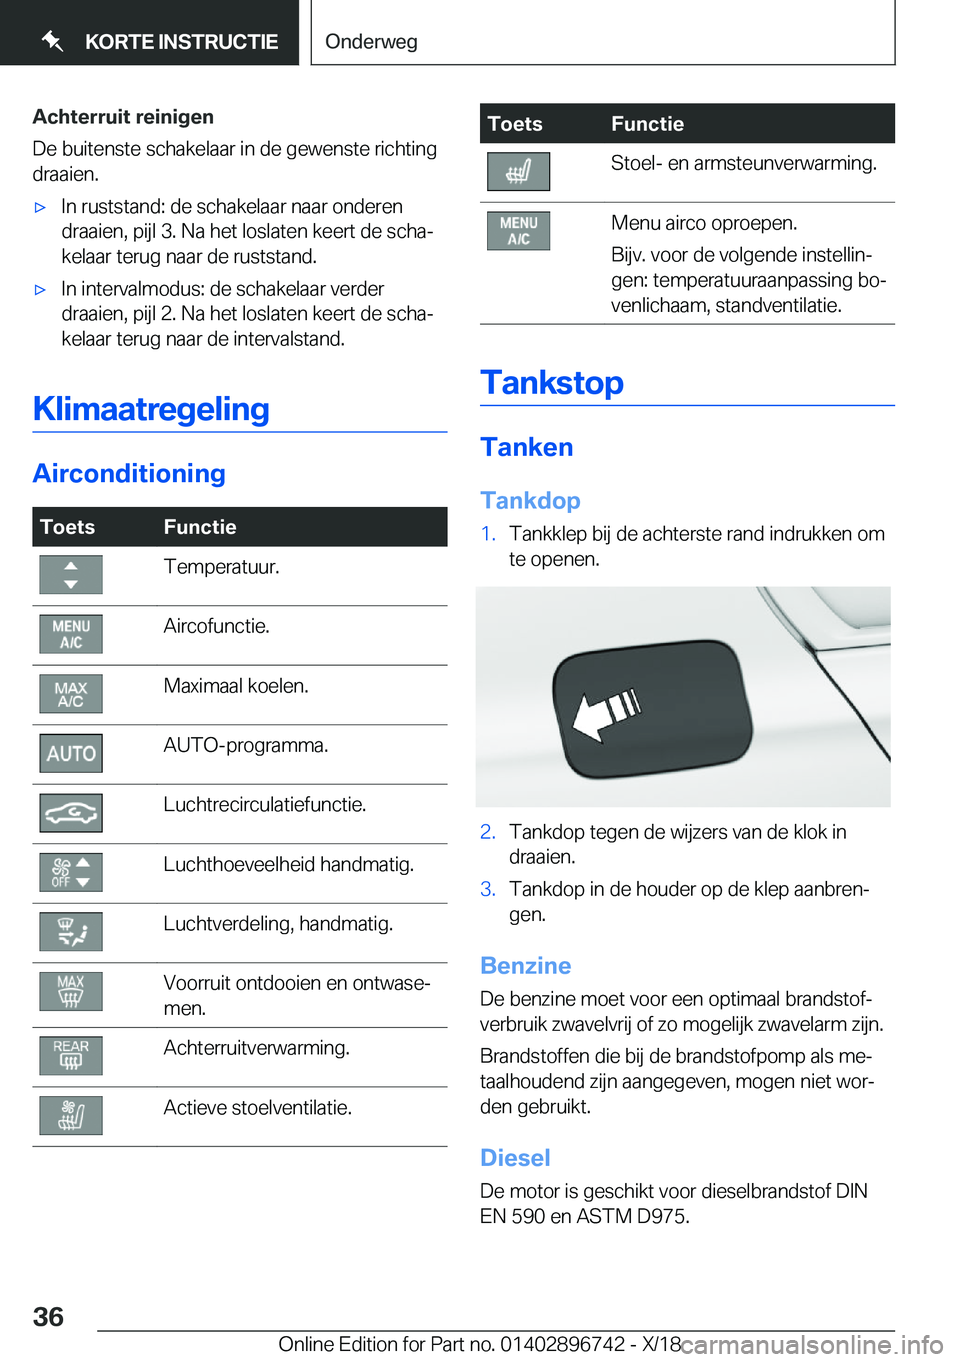 BMW X5 2019  Instructieboekjes (in Dutch) �A�c�h�t�e�r�r�u�i�t��r�e�i�n�i�g�e�n
�D�e��b�u�i�t�e�n�s�t�e��s�c�h�a�k�e�l�a�a�r��i�n��d�e��g�e�w�e�n�s�t�e��r�i�c�h�t�i�n�g
�d�r�a�a�i�e�n�.'x�I�n��r�u�s�t�s�t�a�n�d�:��d�e��s�c�h�a�k